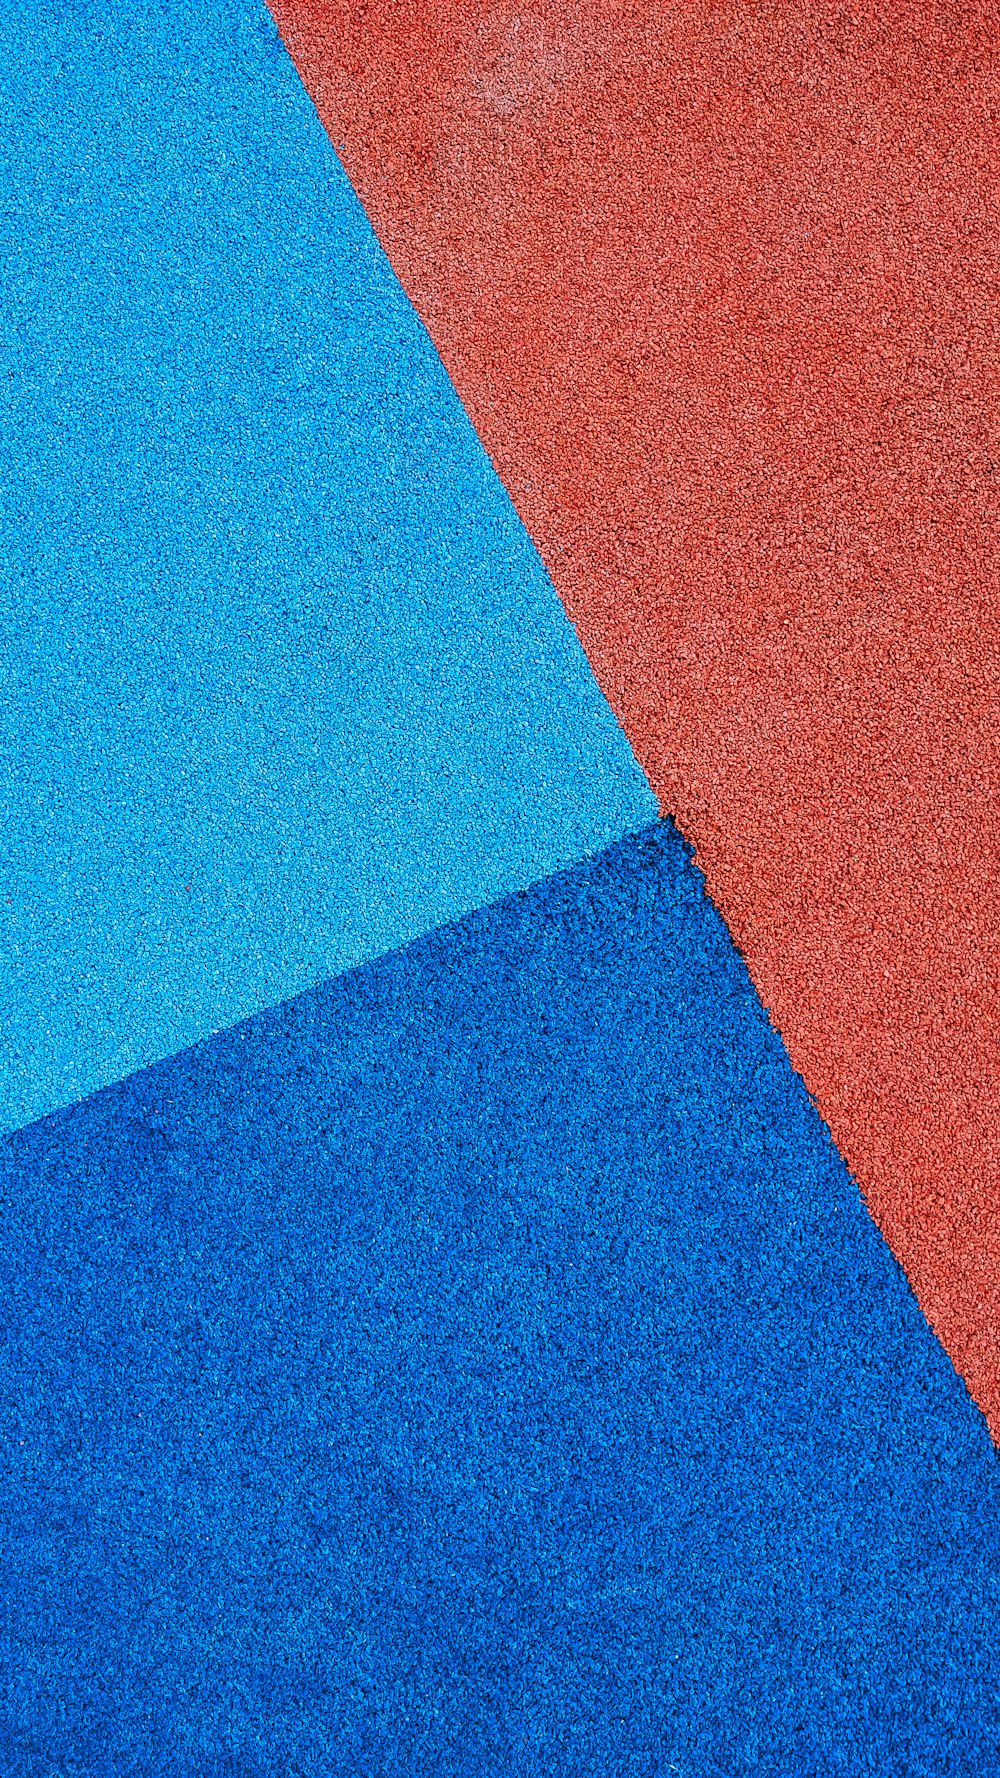 Un primer plano de una alfombra roja, azul y naranja